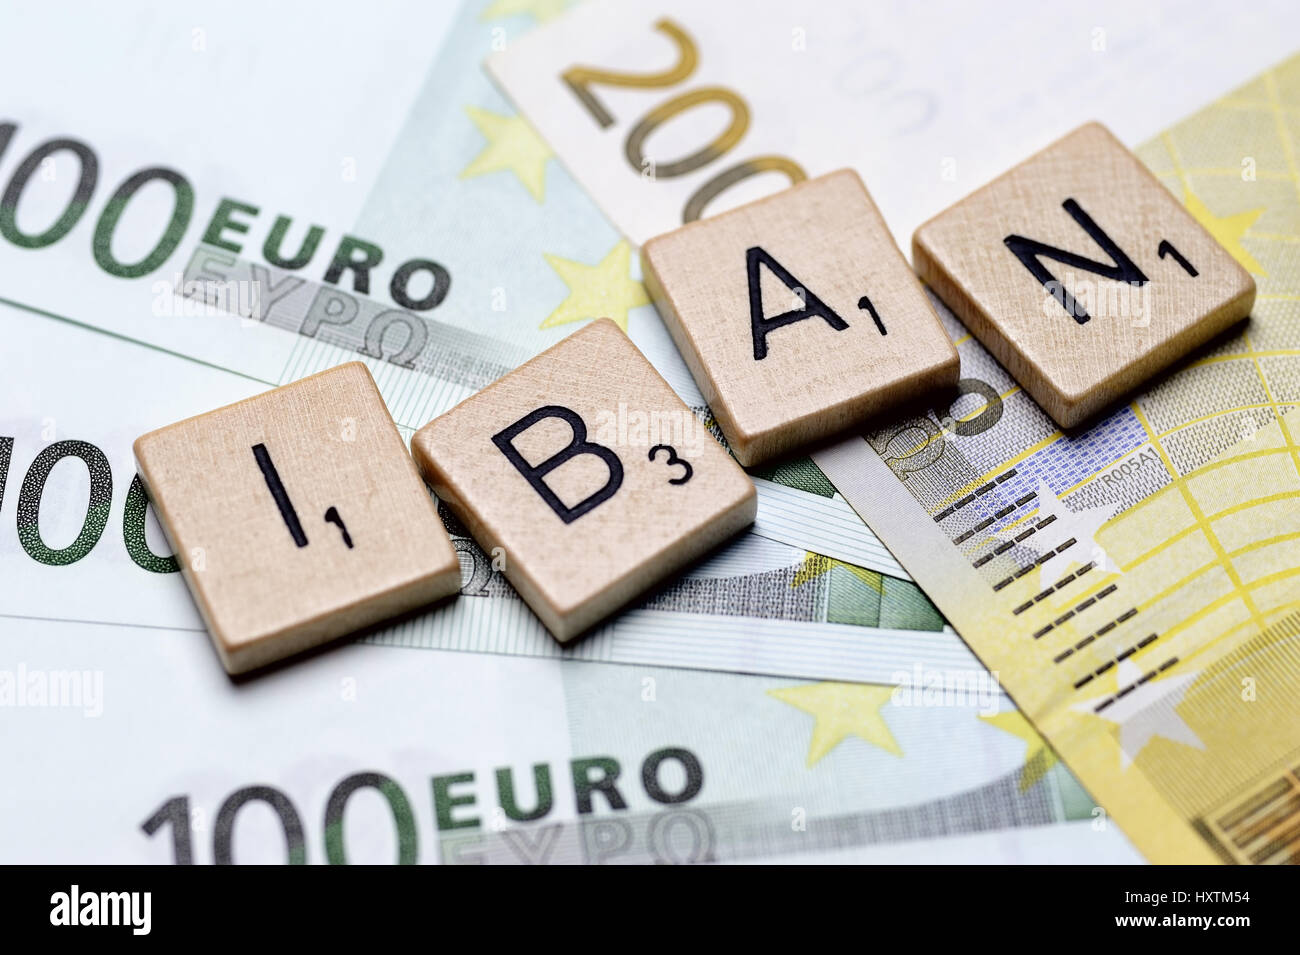 The word IBAN in letters on bank notes, Das Wort IBAN in Buchstaben auf Geldscheinen Stock Photo